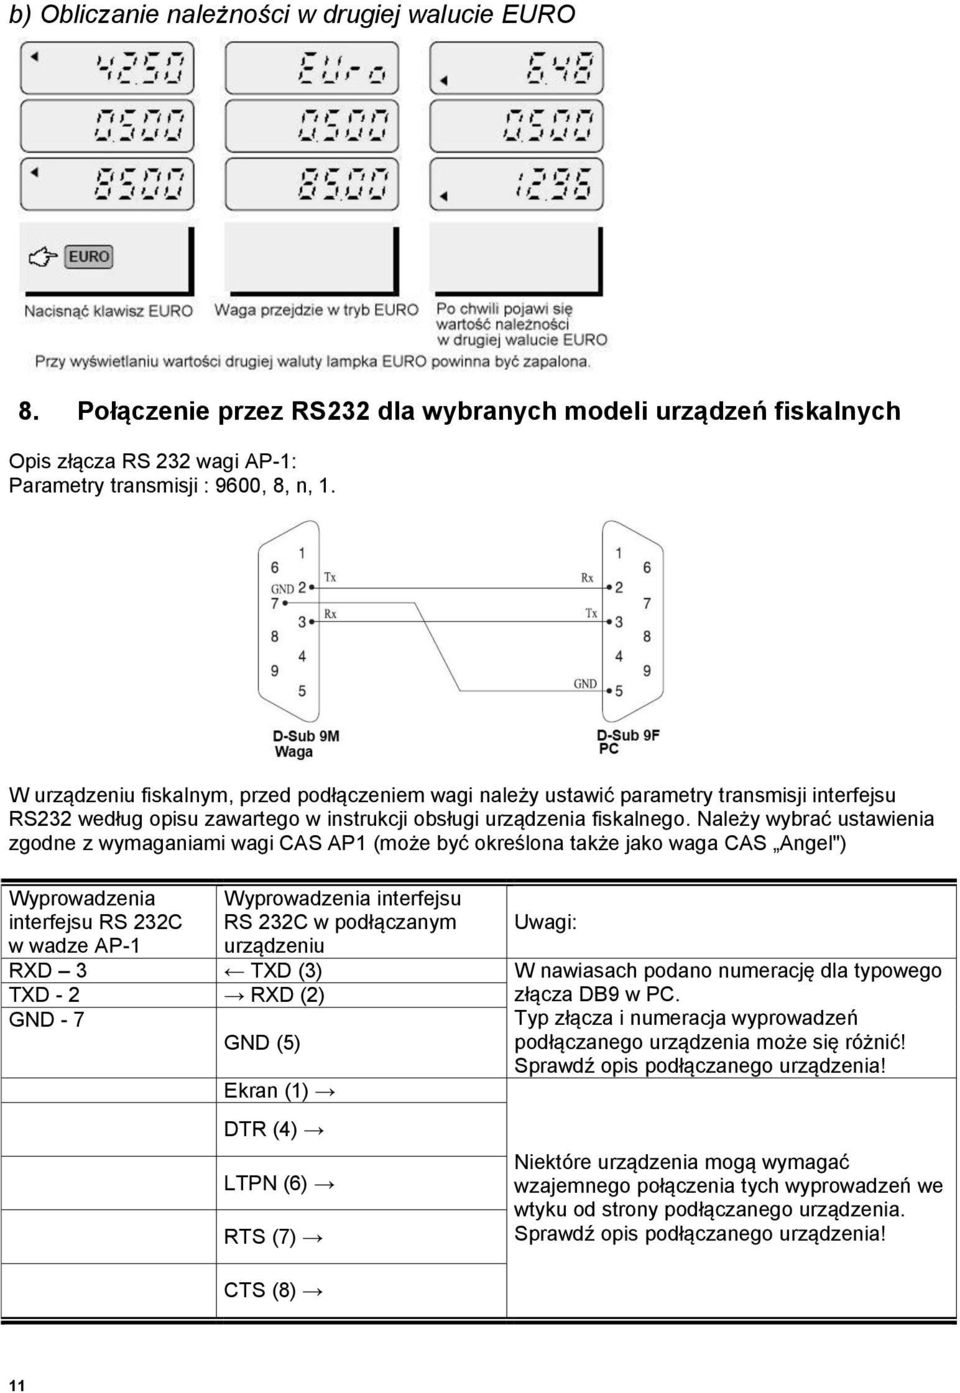 Należy wybrać ustawienia zgodne z wymaganiami wagi CAS AP1 (może być określona także jako waga CAS Angel") Wyprowadzenia interfejsu RS 232C w wadze AP-1 Wyprowadzenia interfejsu RS 232C w podłączanym